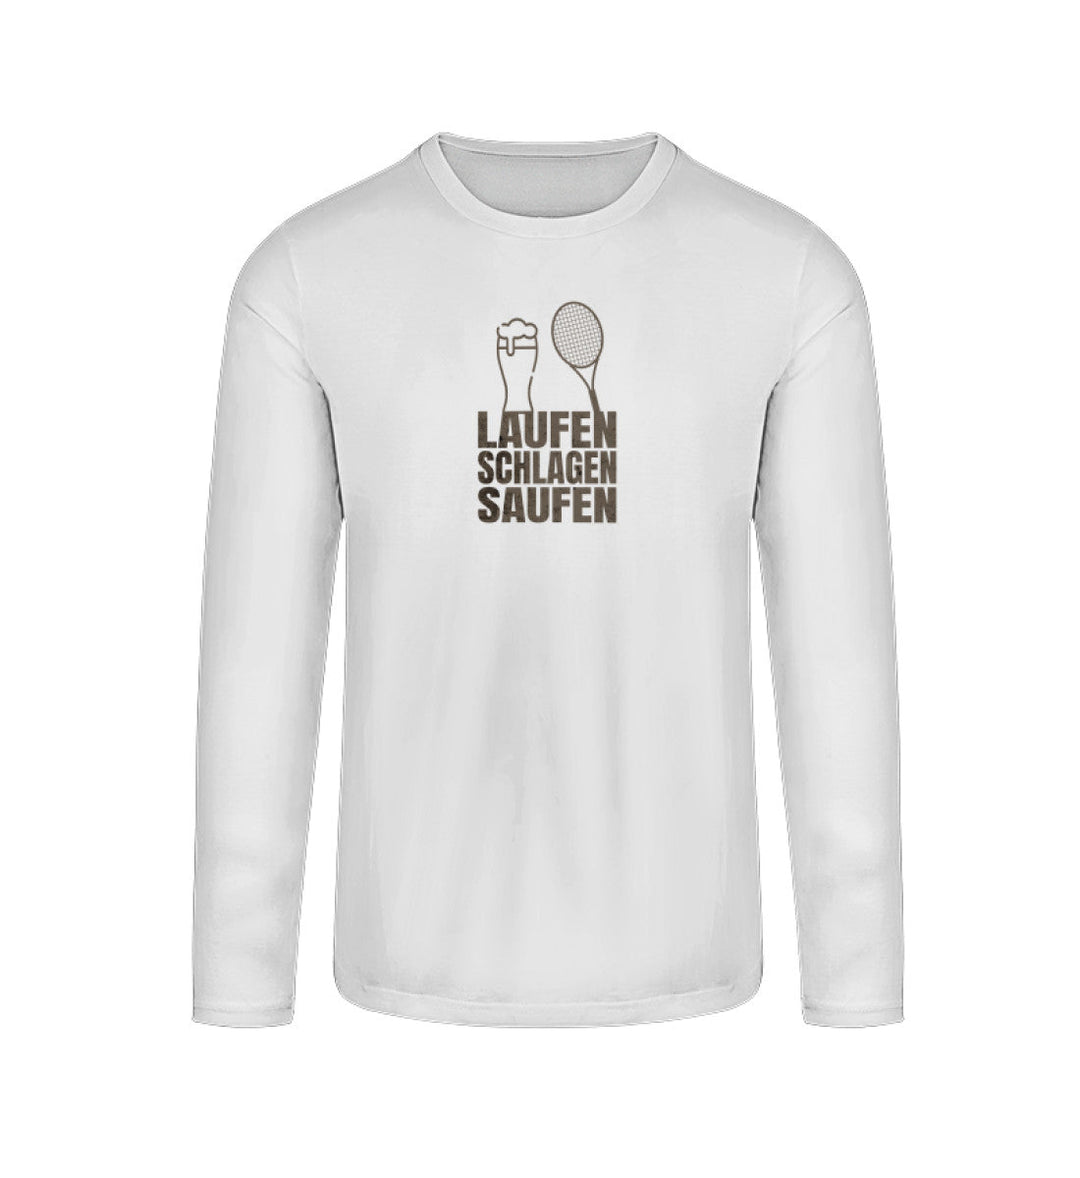 Laufen, Schlagen, Saufen | Longsleeve Unisex - Matchpoint24 - Kleidung für Tennisfans